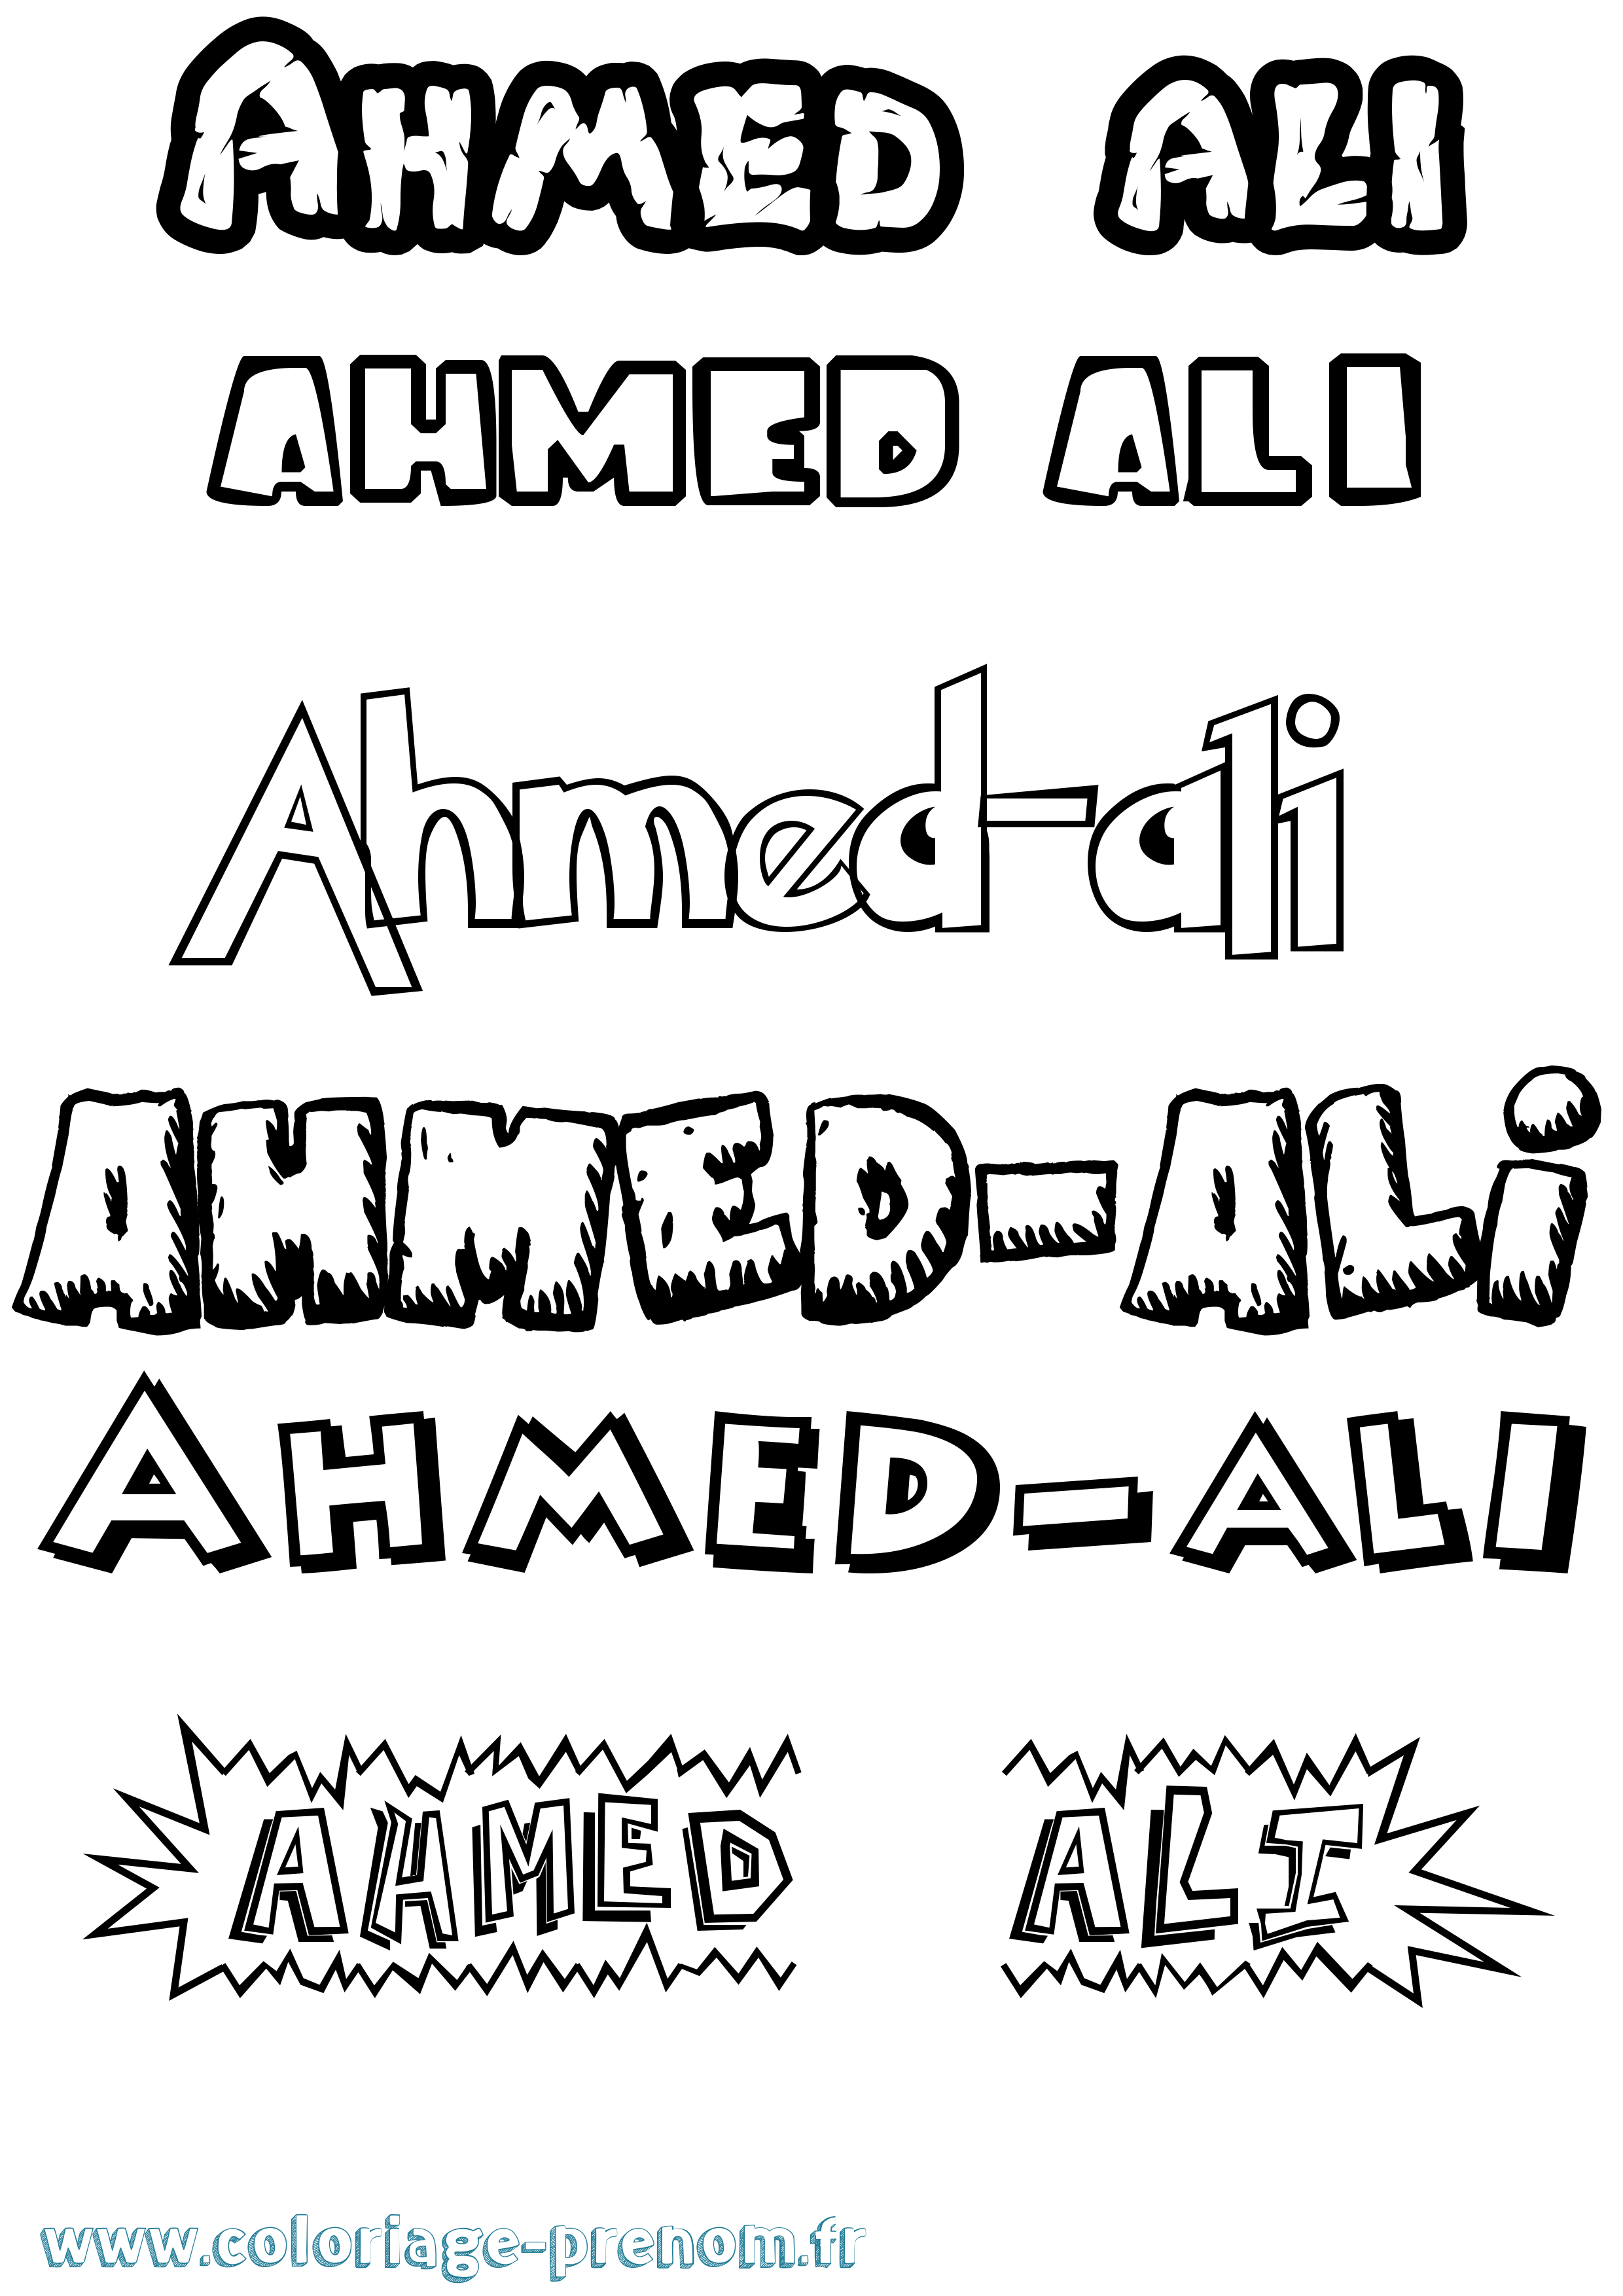 Coloriage prénom Ahmed-Ali Dessin Animé